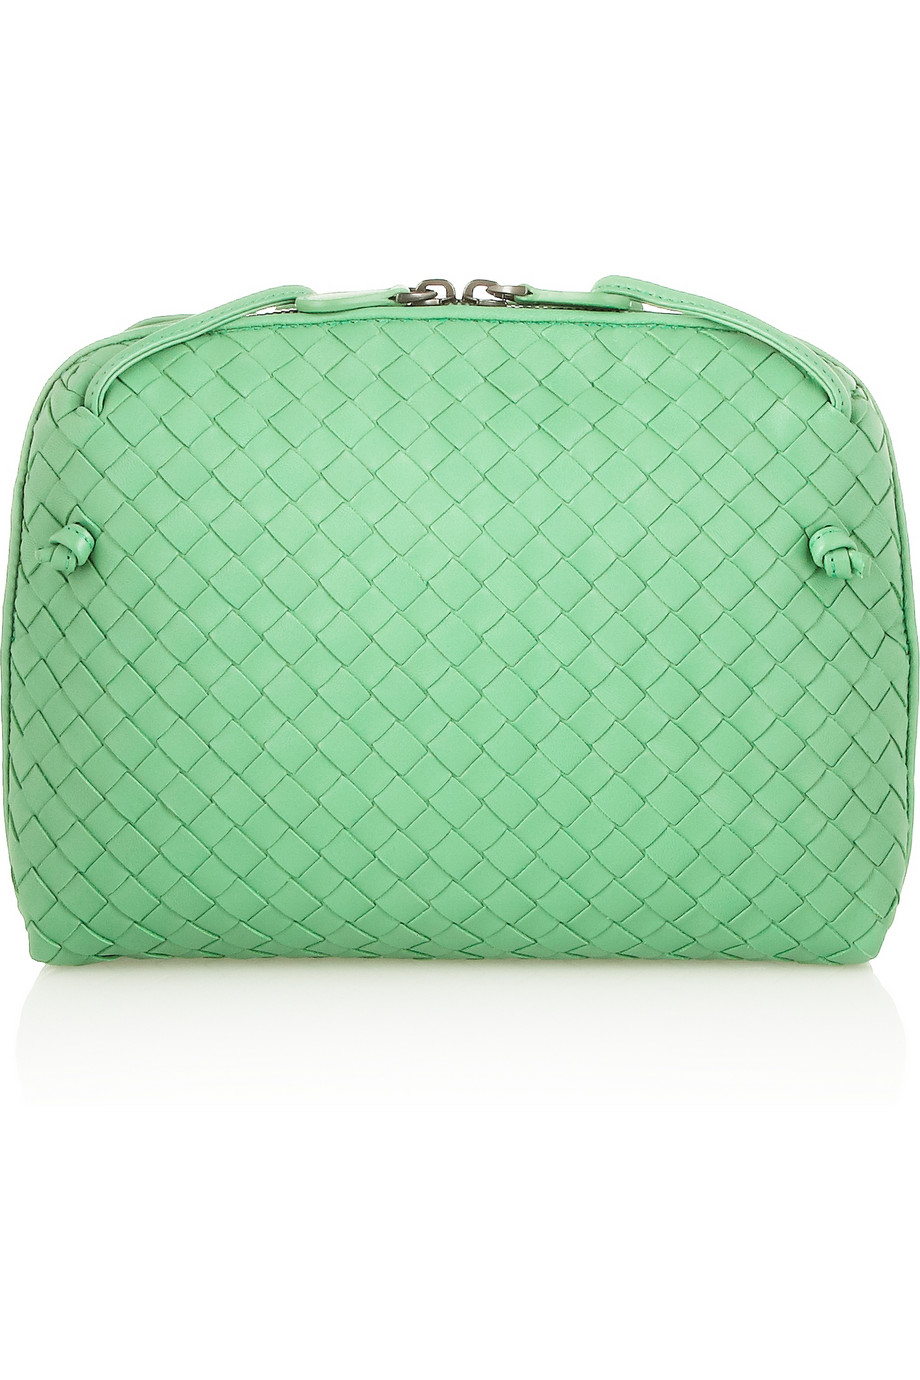 Lyst - Bottega Veneta Intrecciato Nappa Leather Shoulder Bag in Green